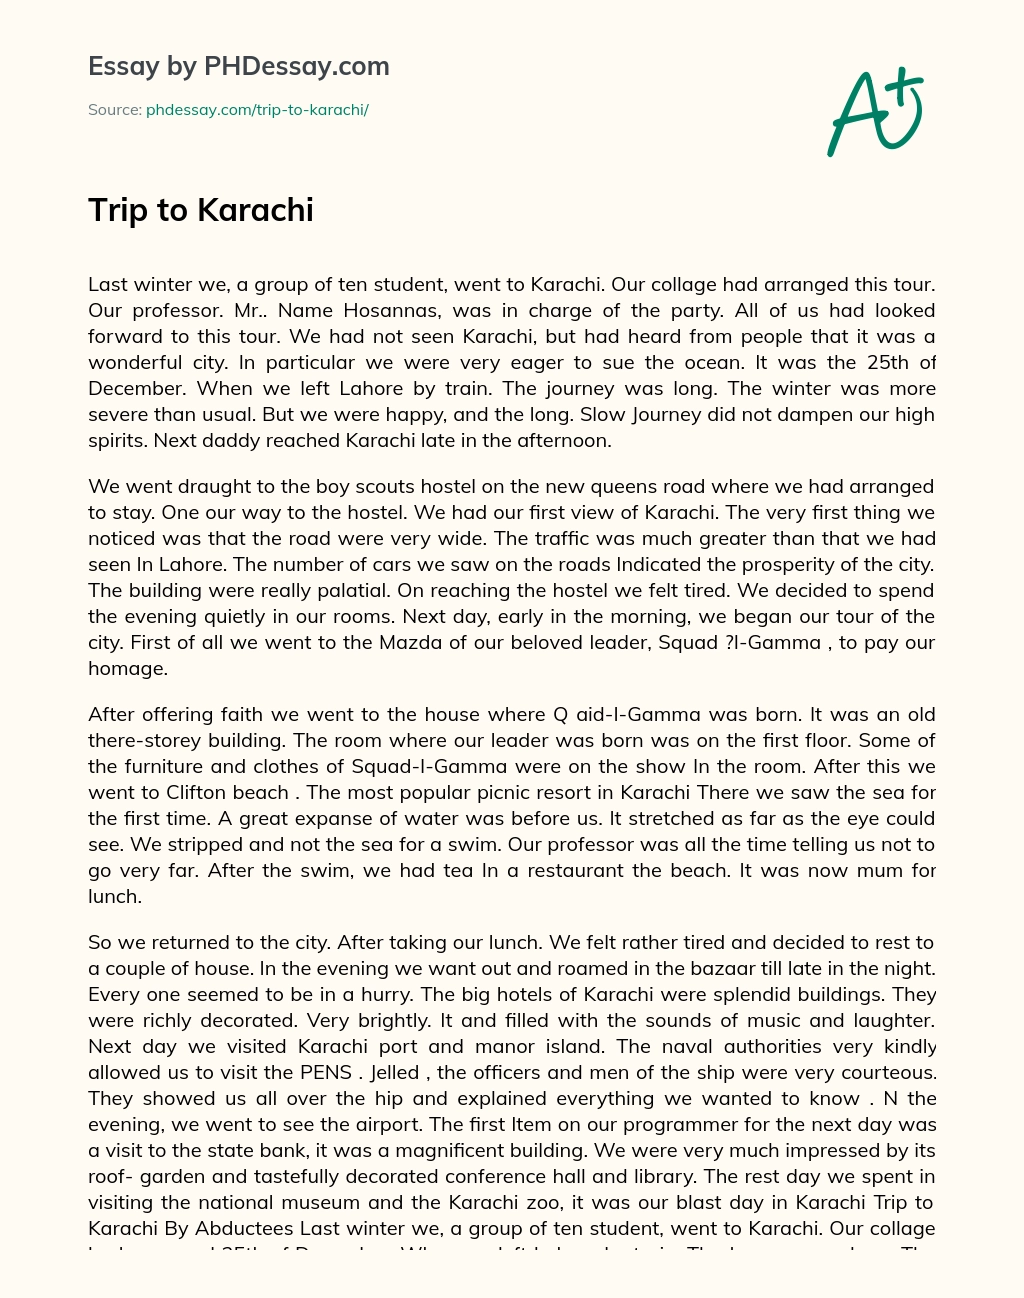 Trip to Karachi essay